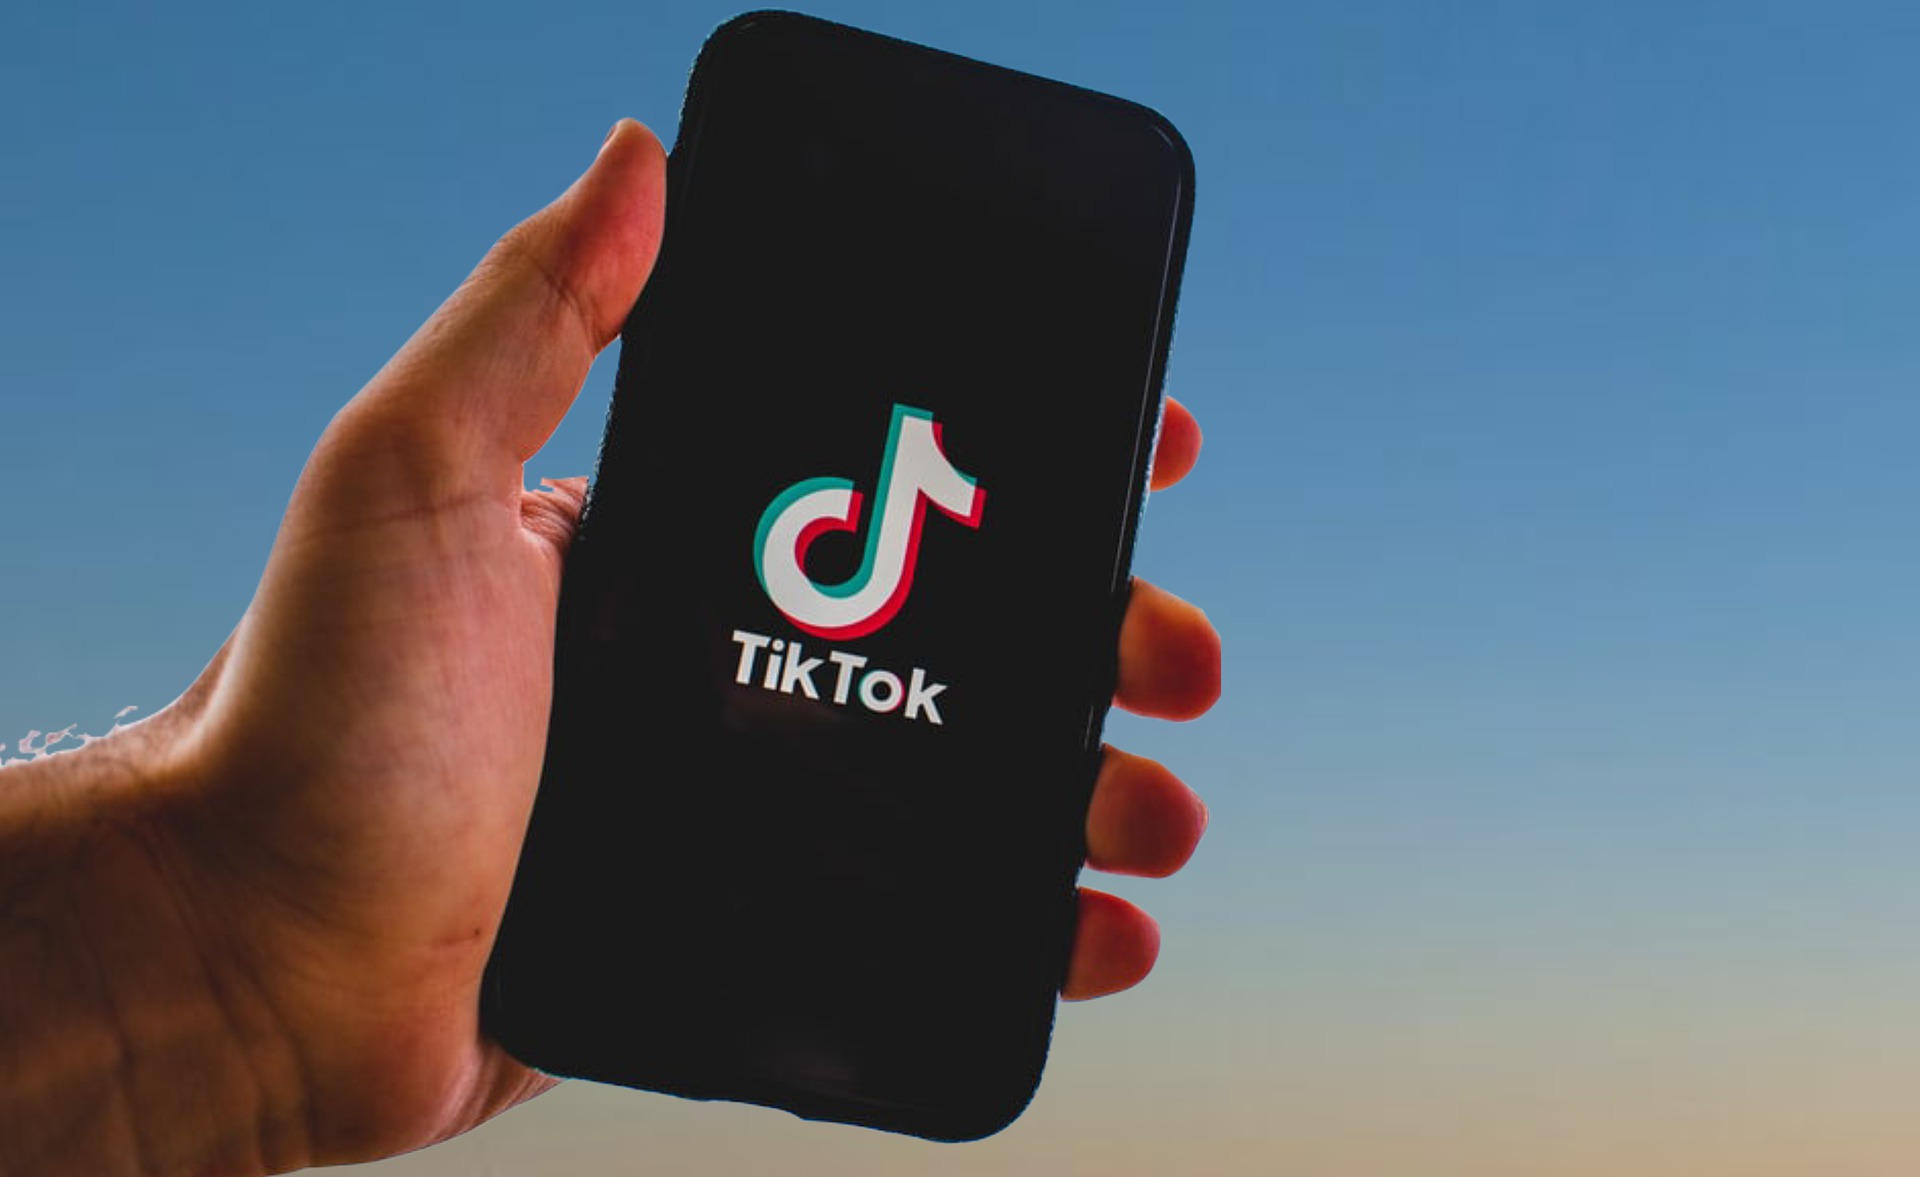 TikTok informuje, że z jego aplikacji korzysta miliard osób każdego miesiąca